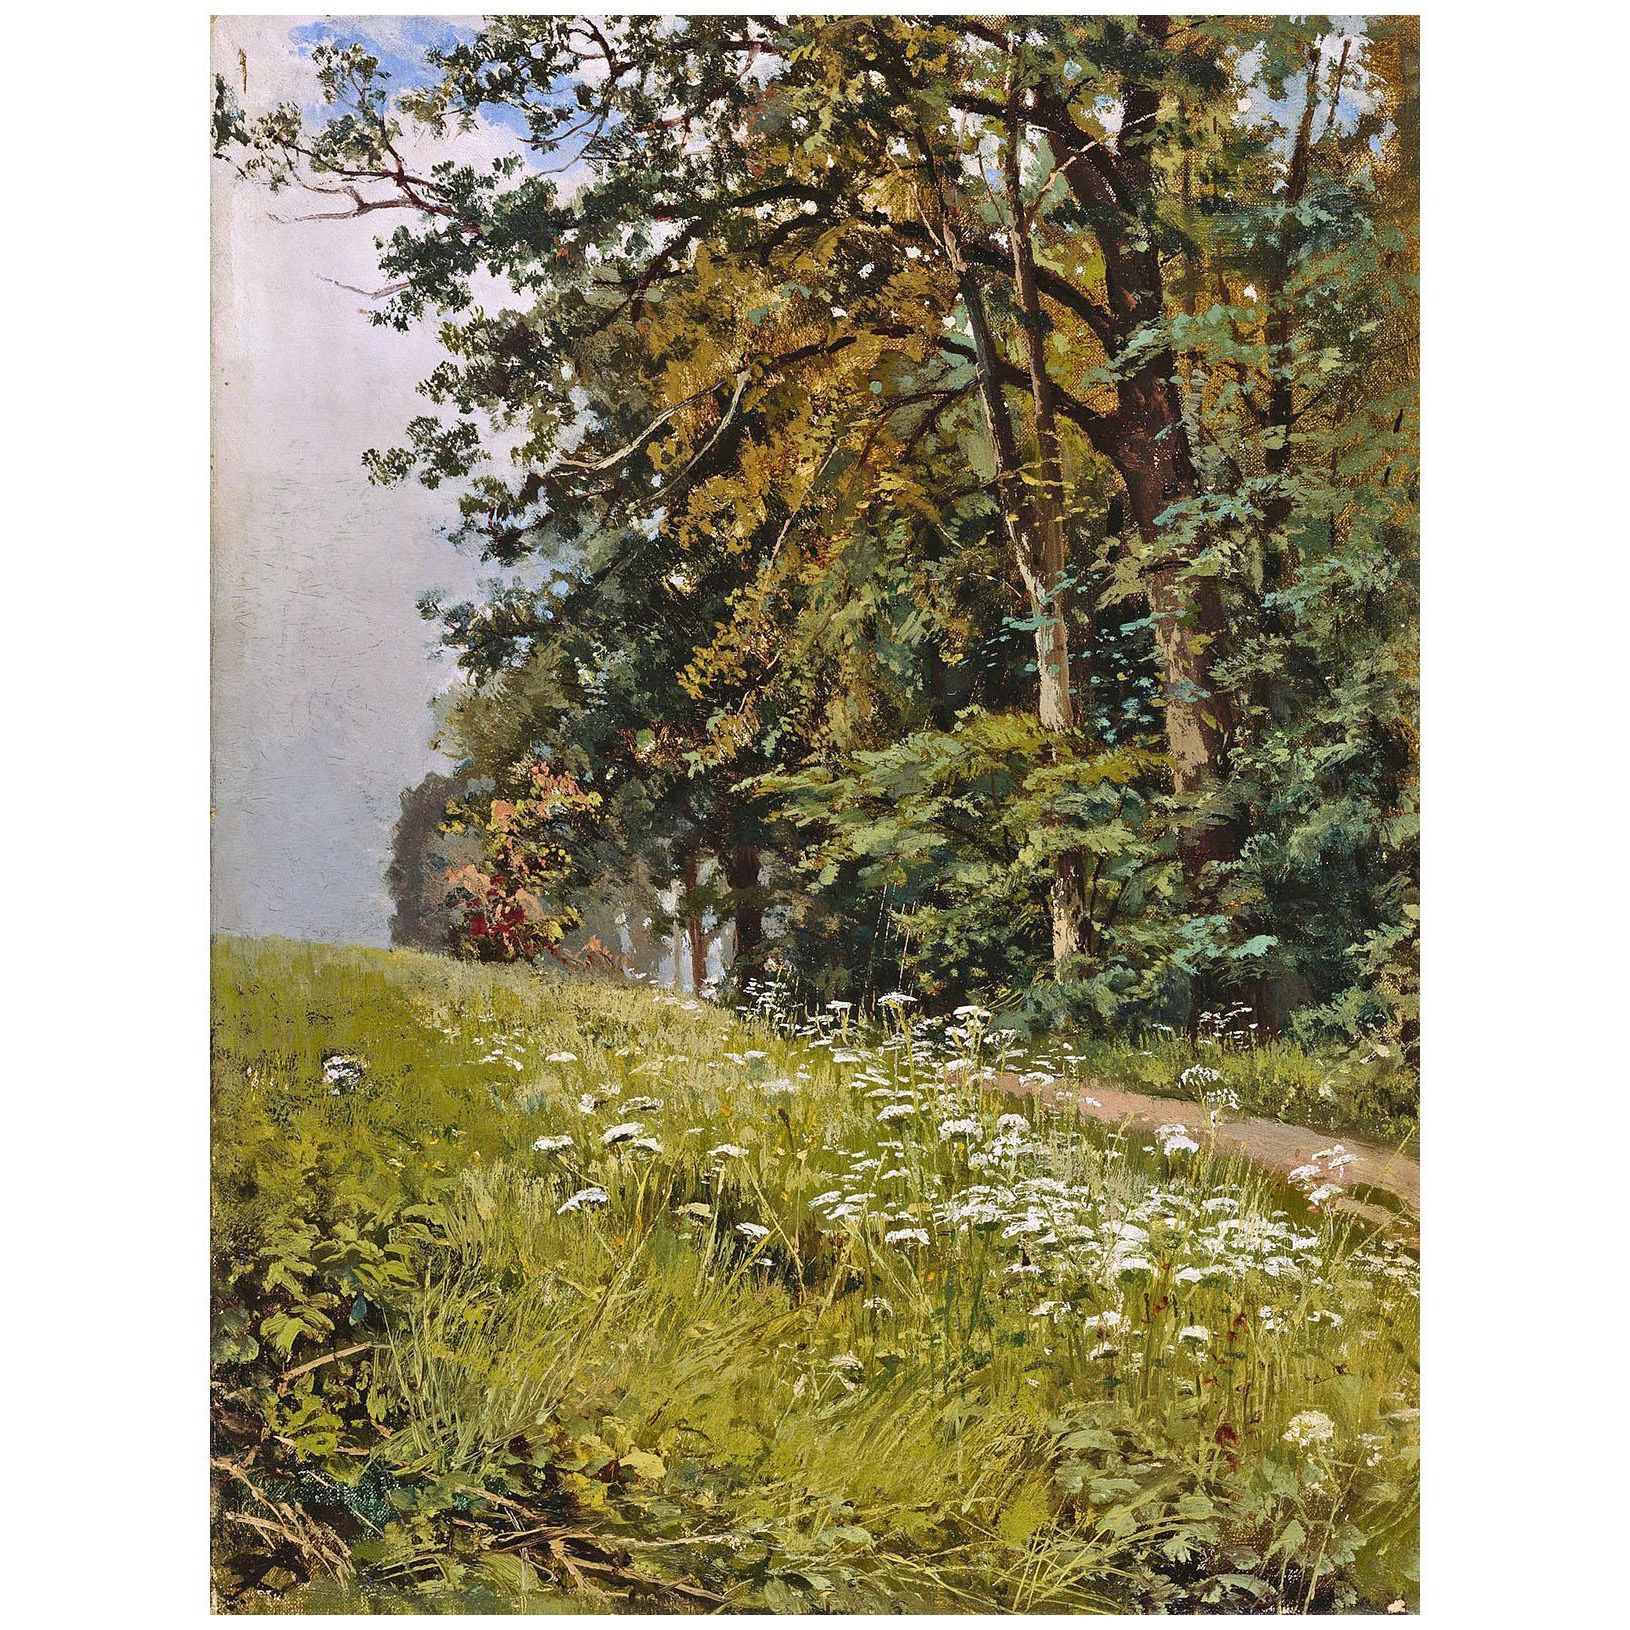 Иван Шишкин. Пейзаж. 1880-е. Национальная галерея, Хельсинки